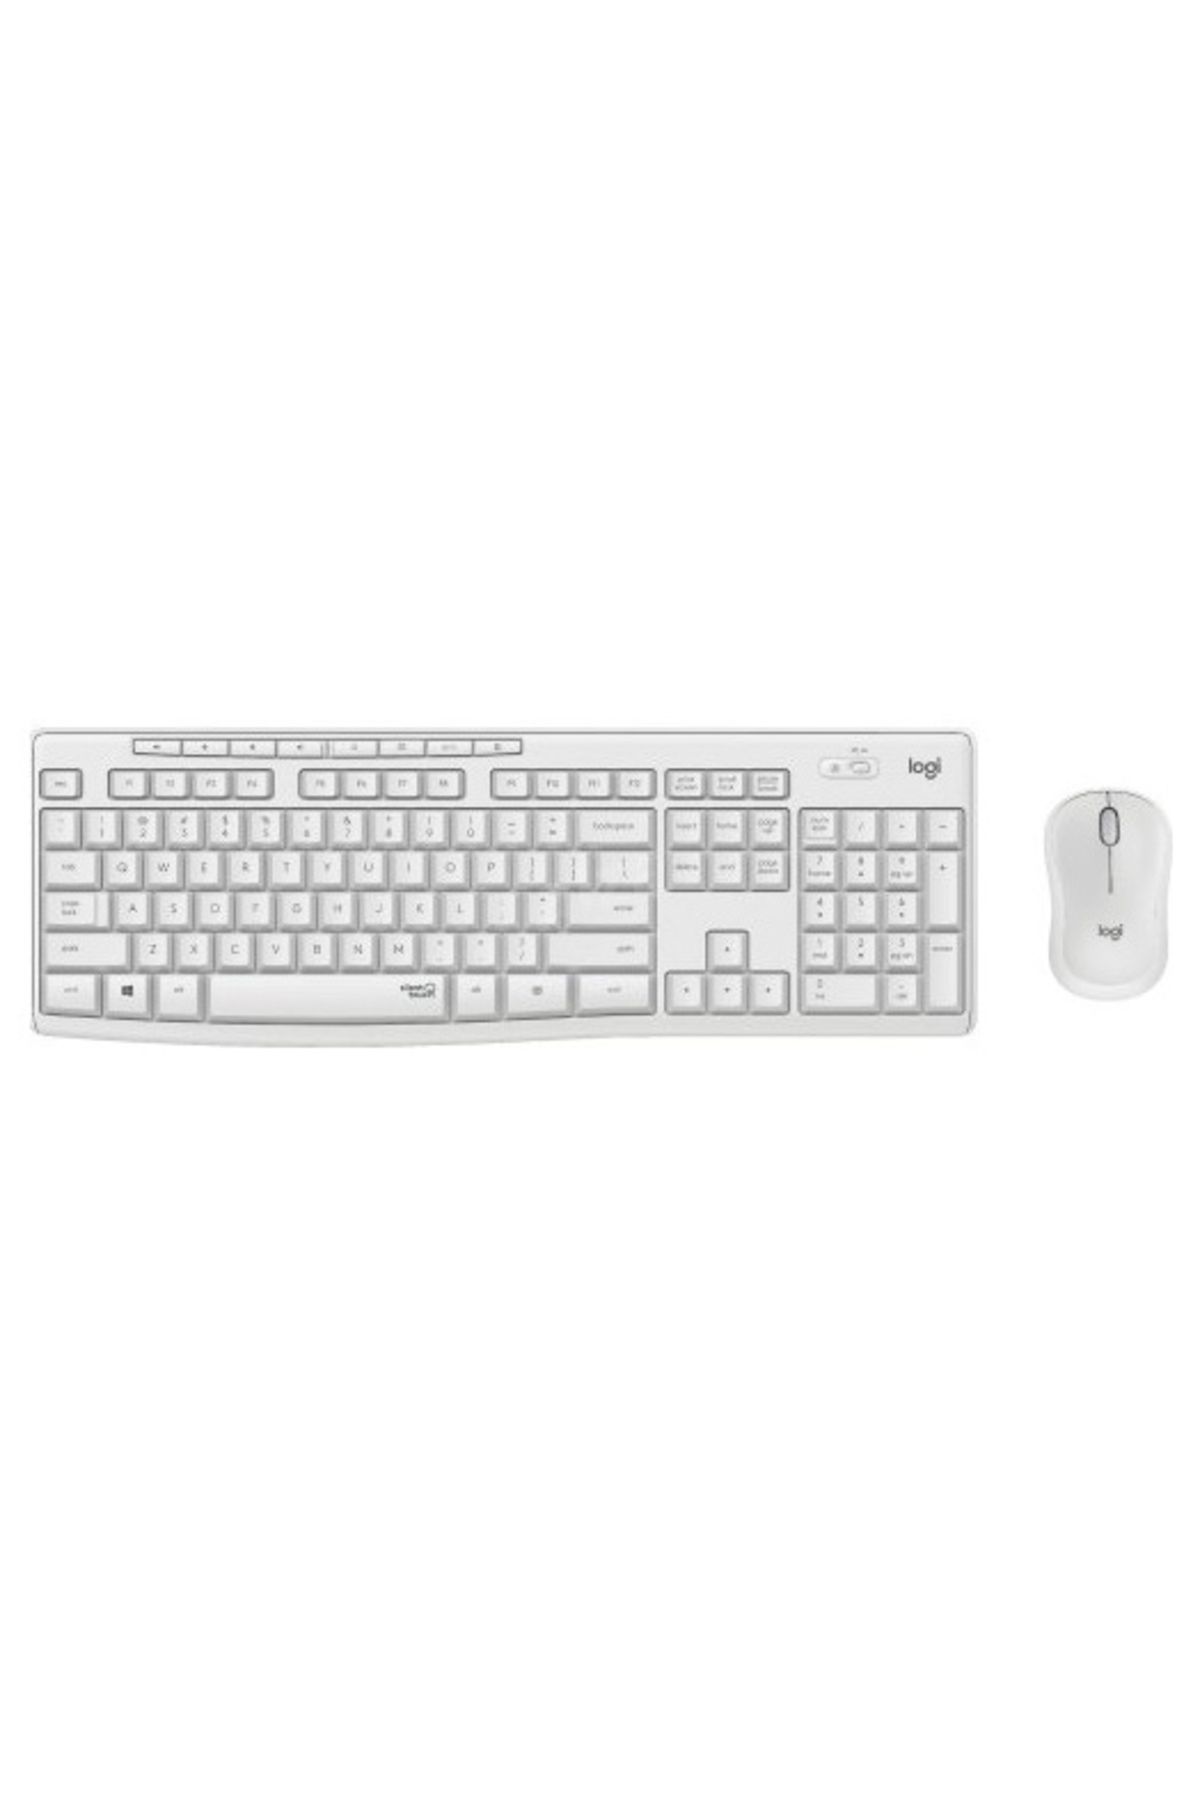 logitech Mk295 920-010089 Beyaz Kablosuz Klavye Mouse Set